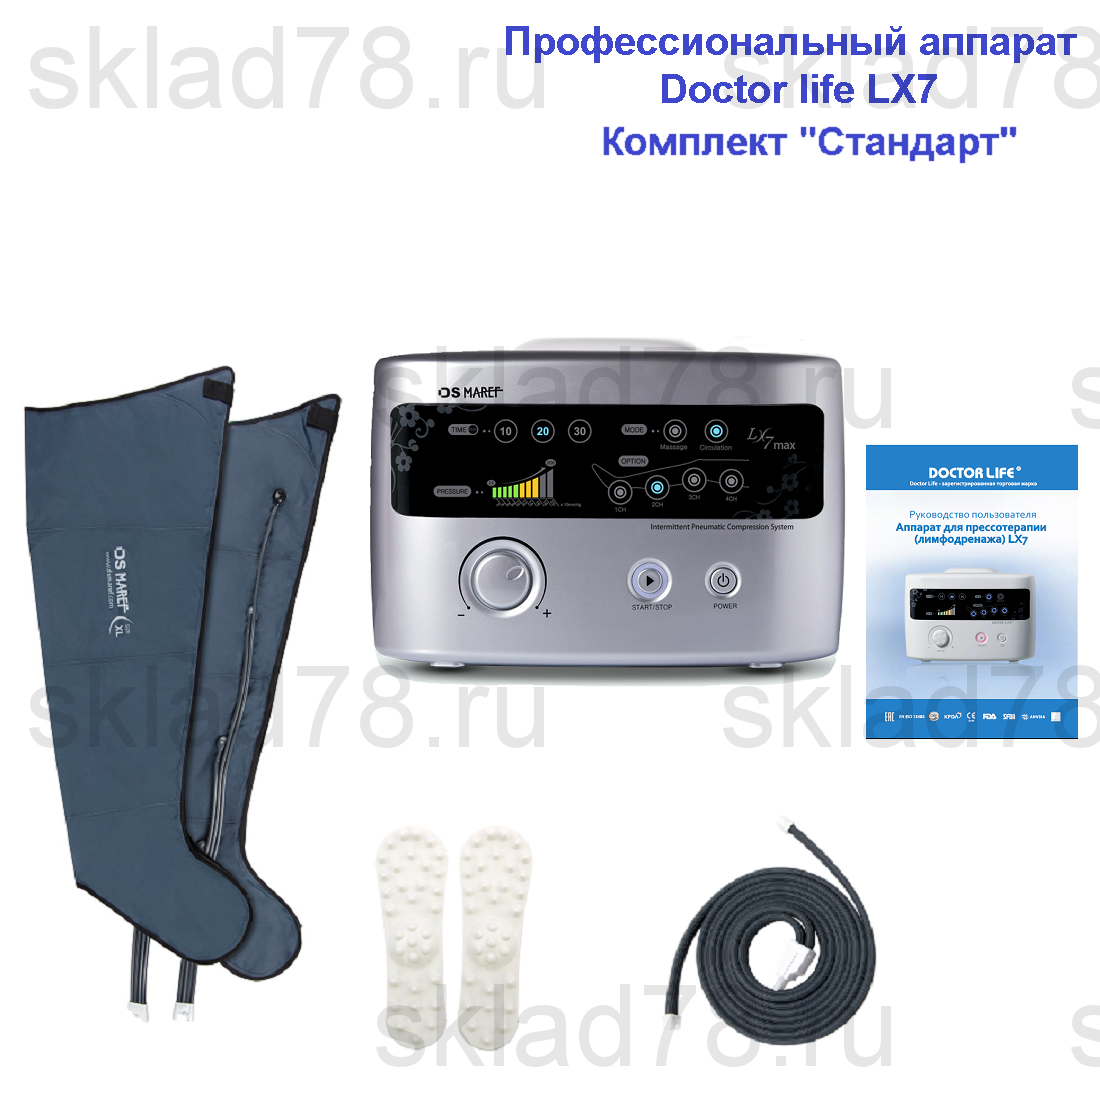 Doctor Life LX-7 лимфодренажный аппарат «Стандартный» комплект